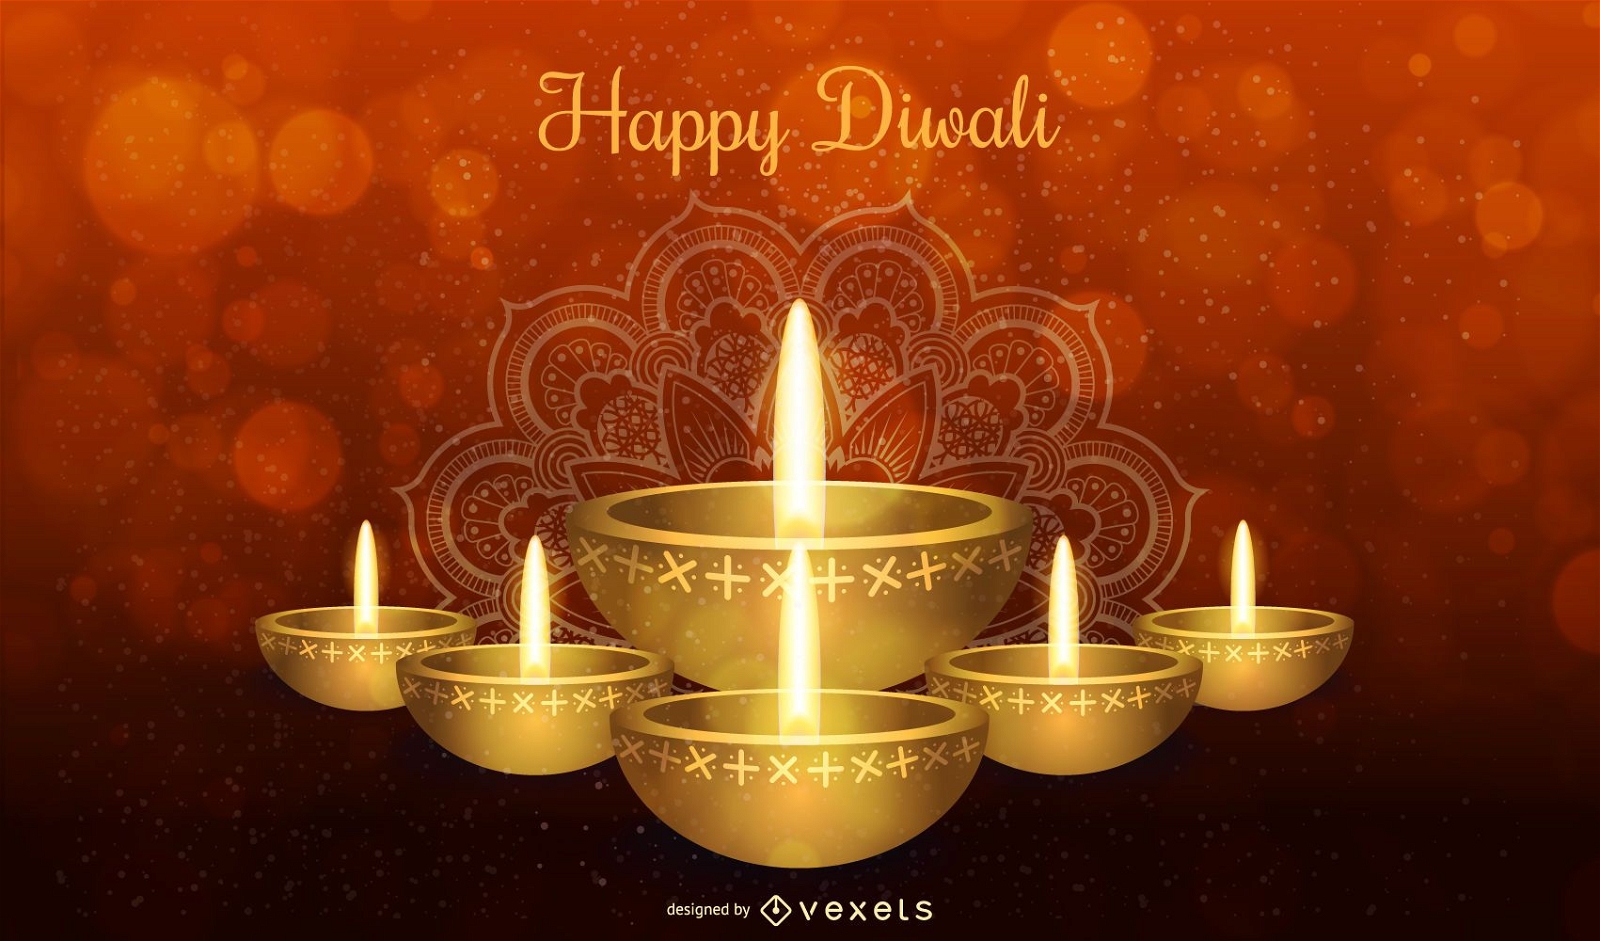 Dise?o feliz de Diwali con vela y tipograf?a.